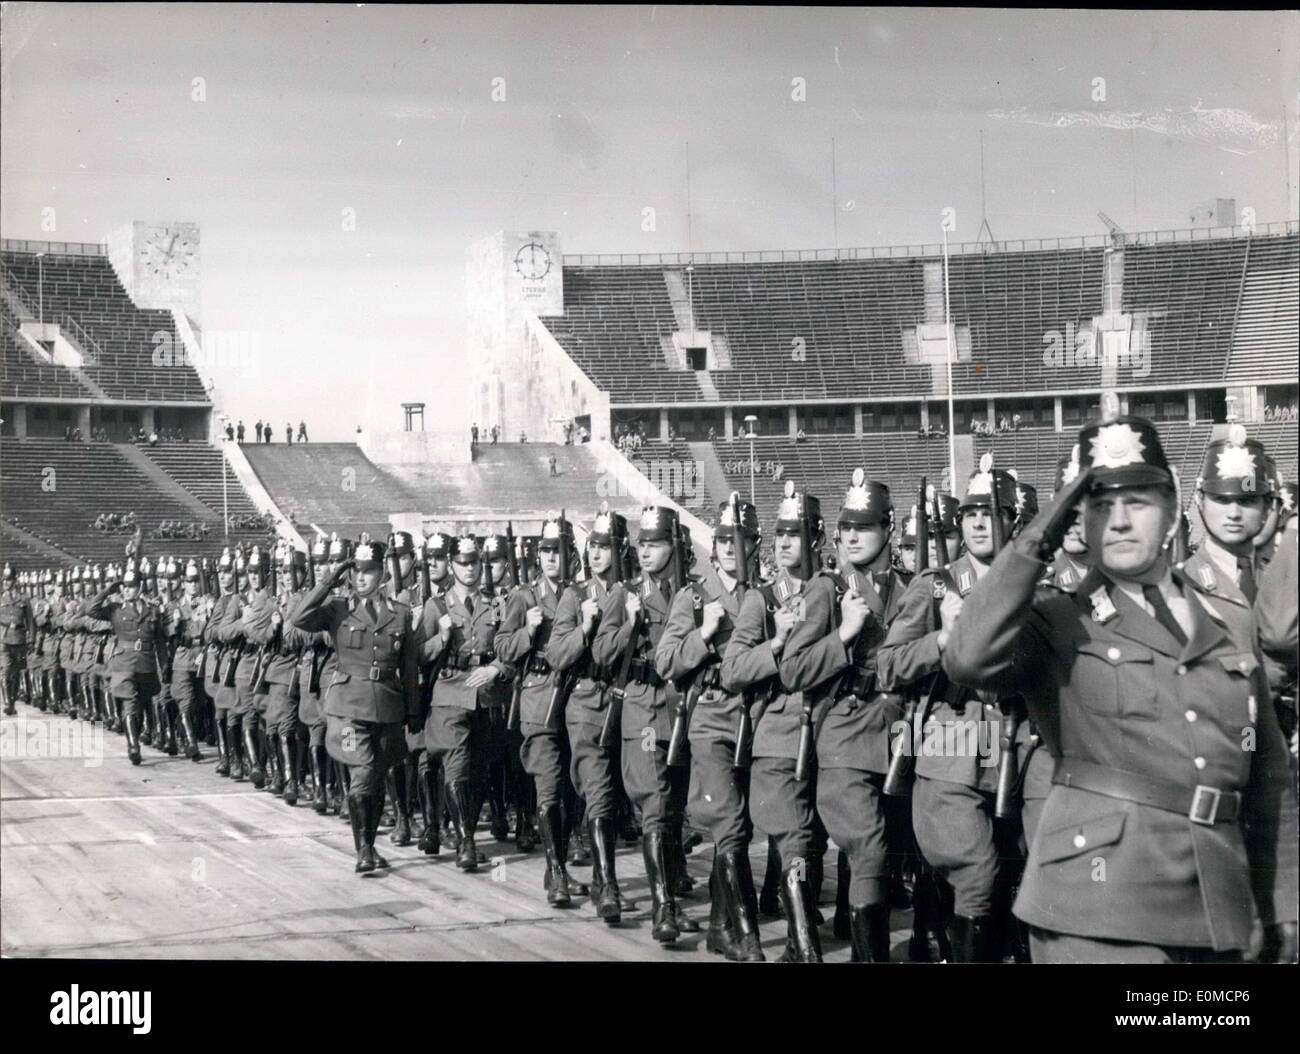 Septembre 03, 1954 - Des unités de police de Berlin est arrivé au stade olympique avec le vol des drapeaux pour commencer leur police annuelle Festival sportif. Banque D'Images